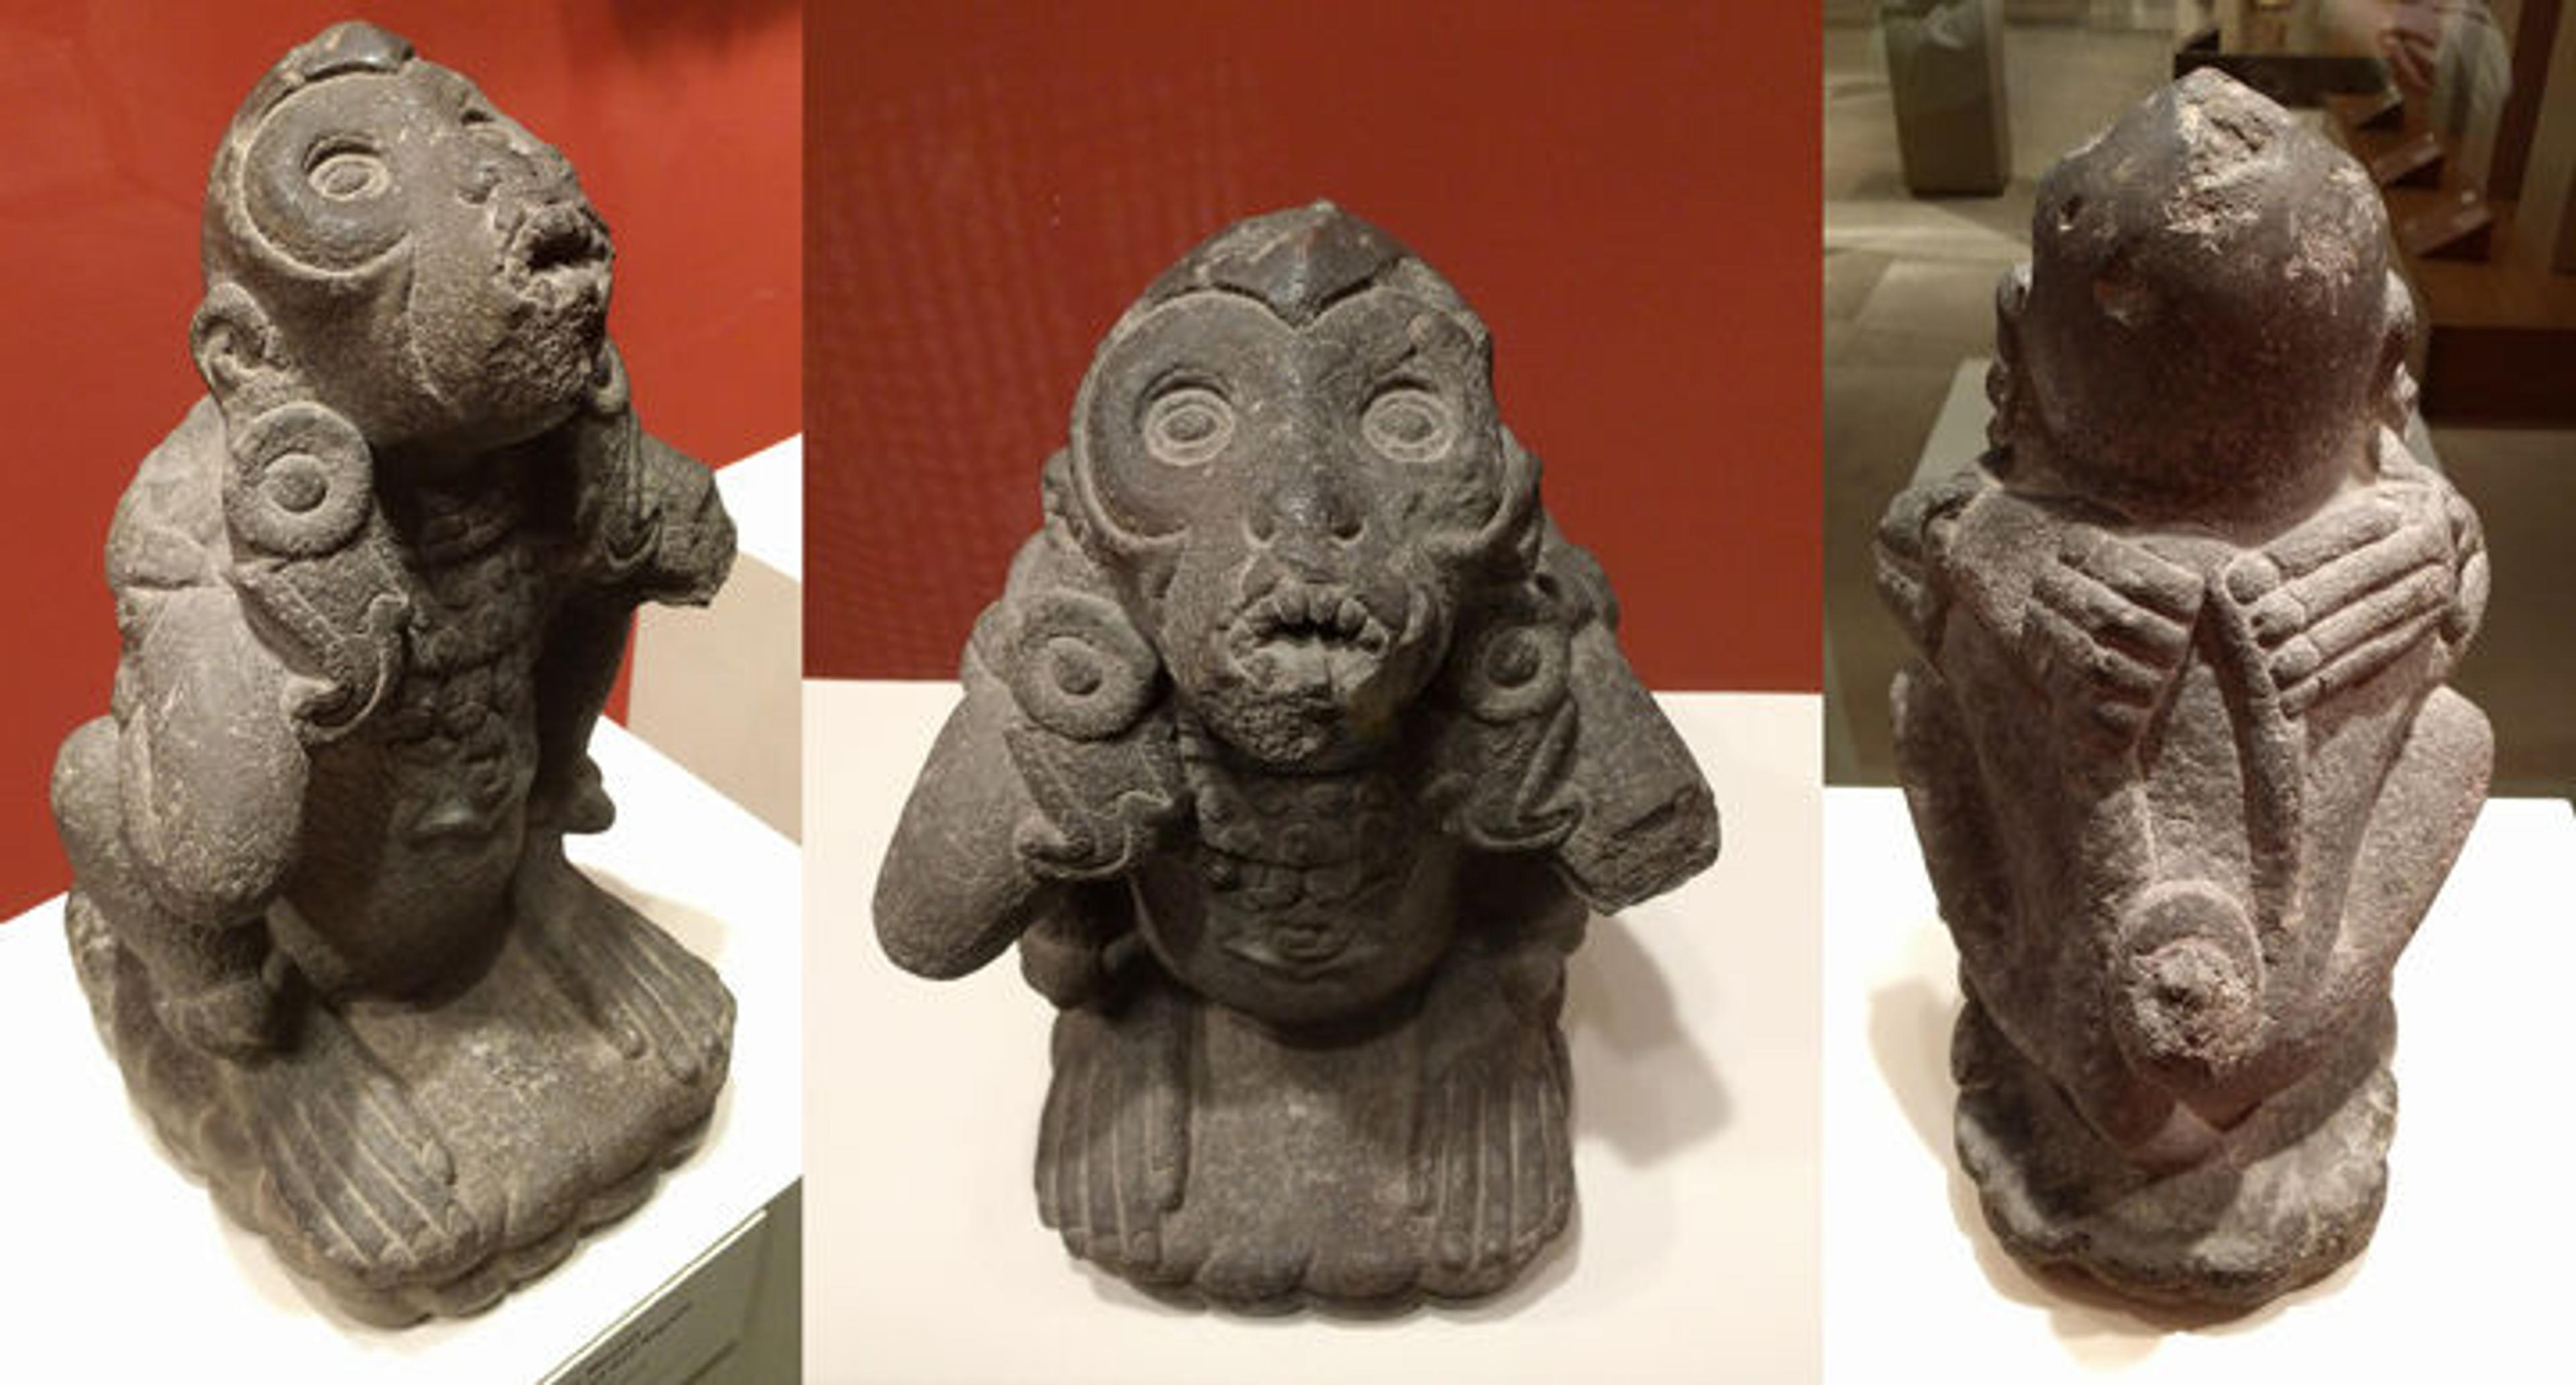 Three views of an Aztec spider monkey sculpture